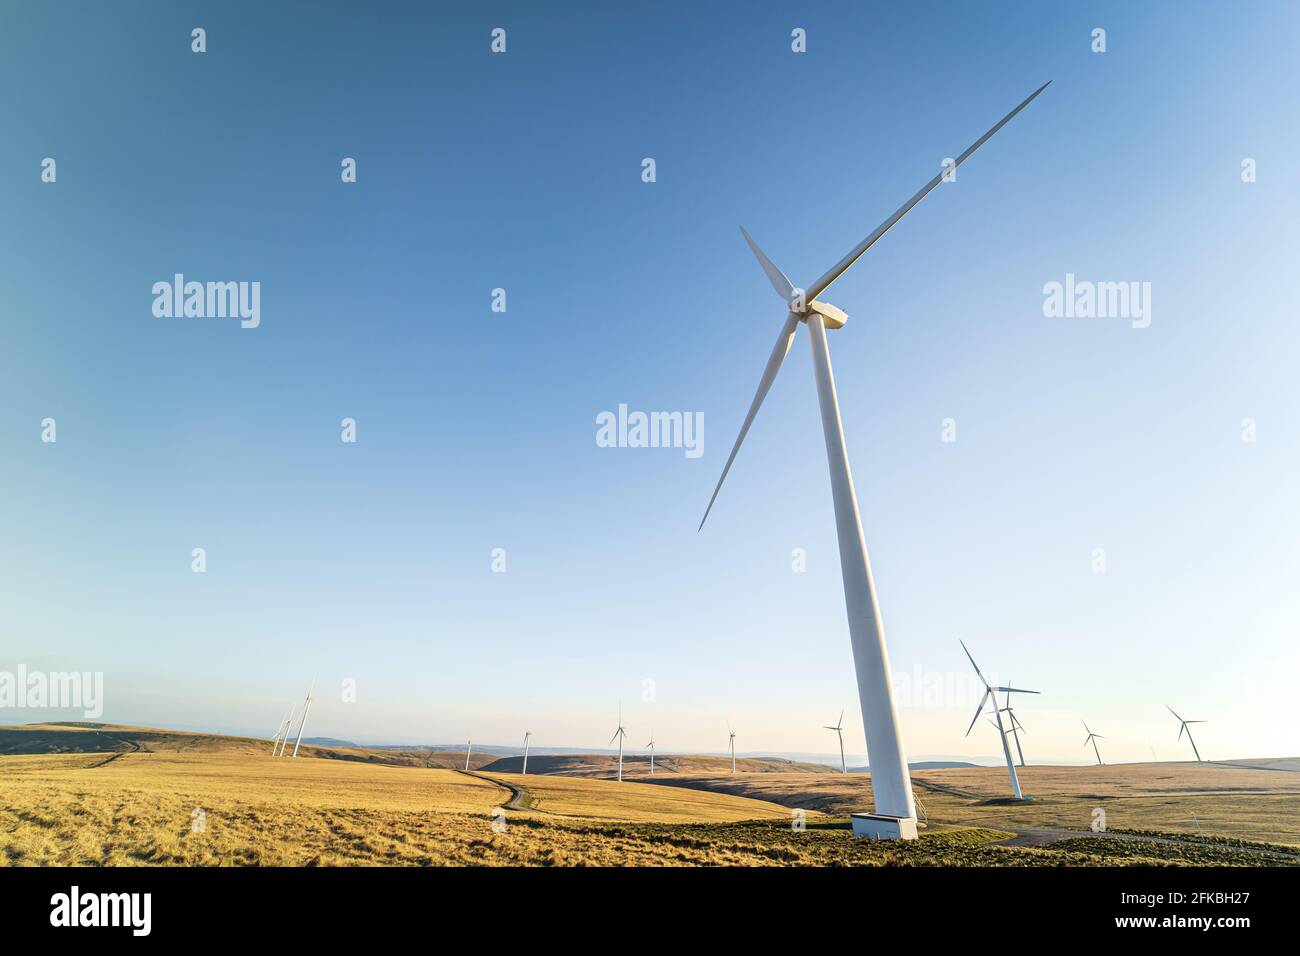 Windturbinen des Windparks Mynydd y Betws, Swansea, Carmarthenshire, South Wales, Großbritannien. Nachhaltige erneuerbare Energiequellen, Auswirkungen auf die Umwelt Stockfoto